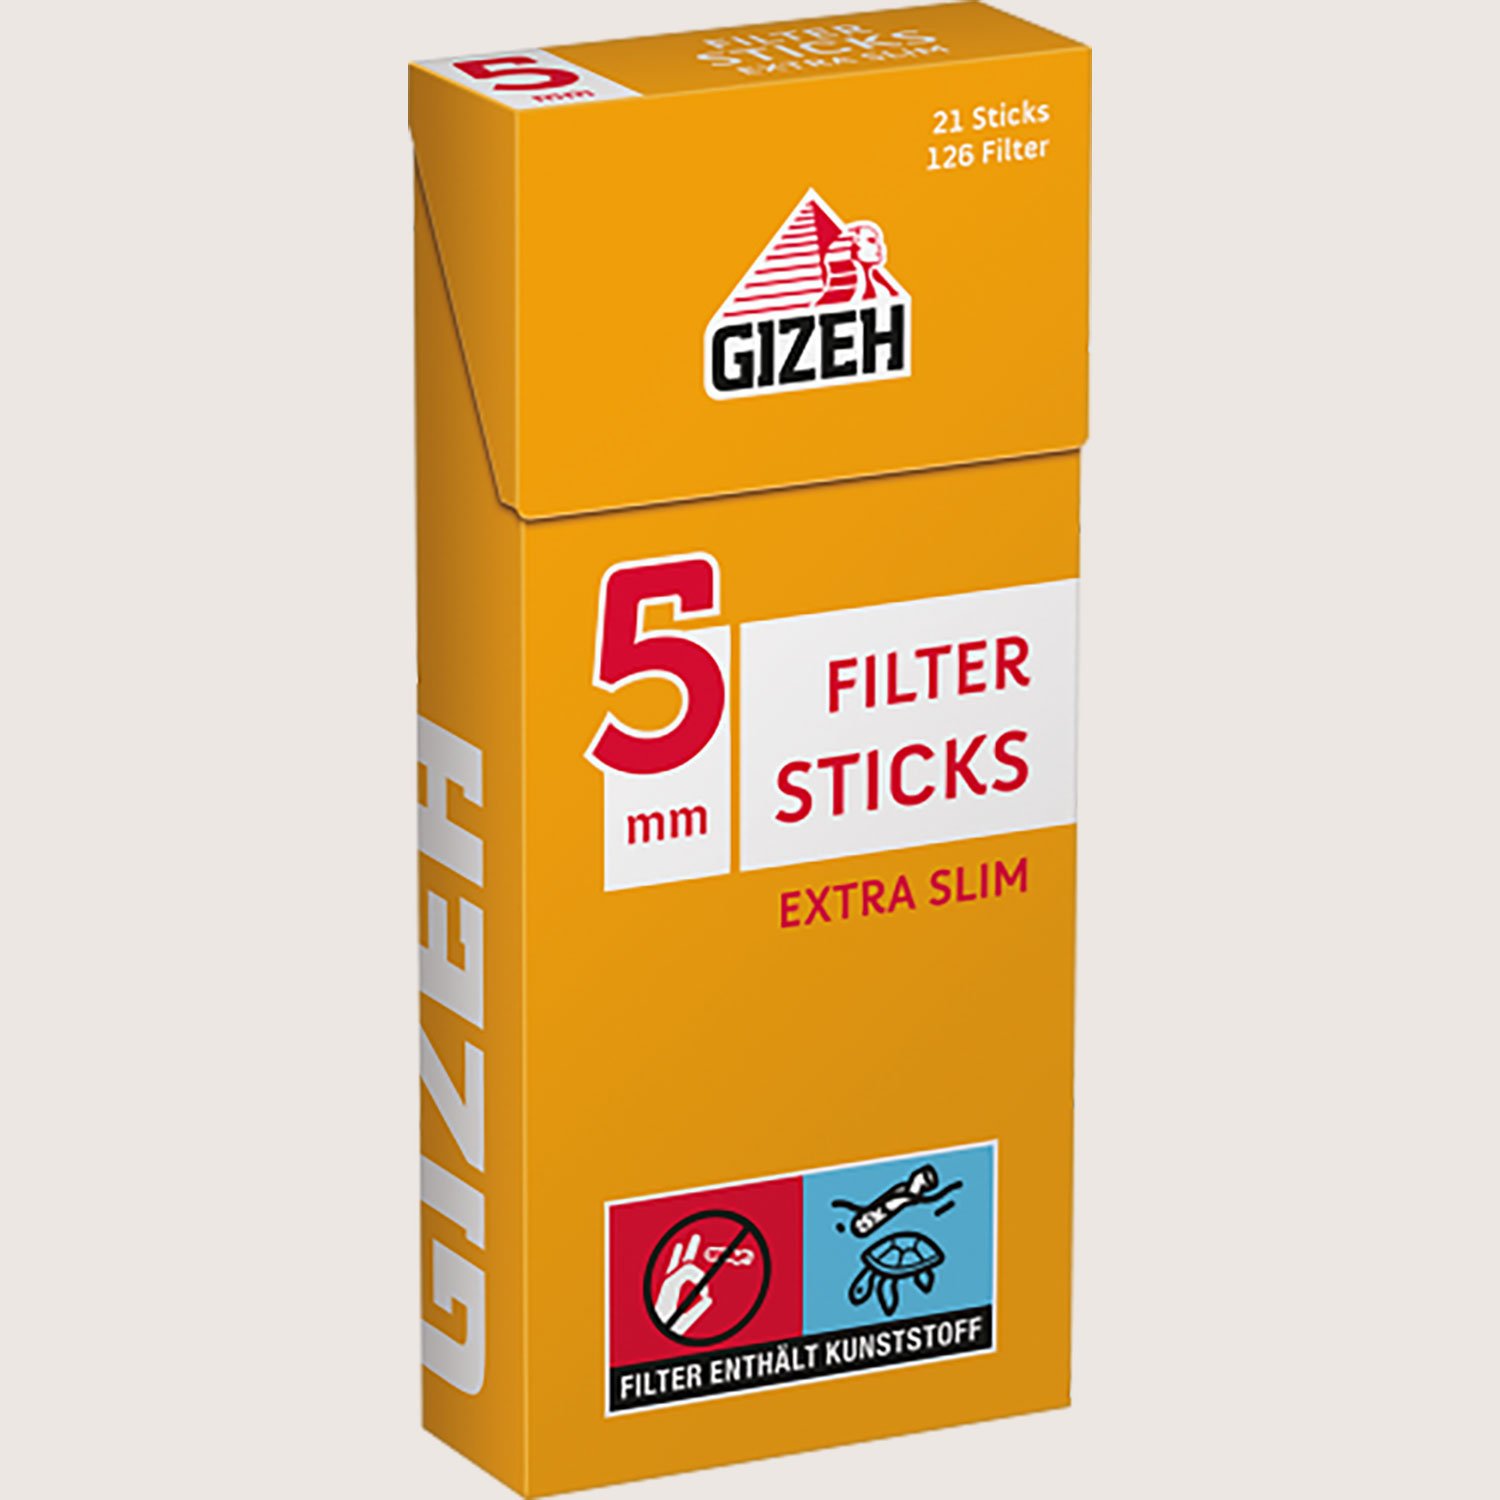 gizehfiltersticks5mmextraslim126